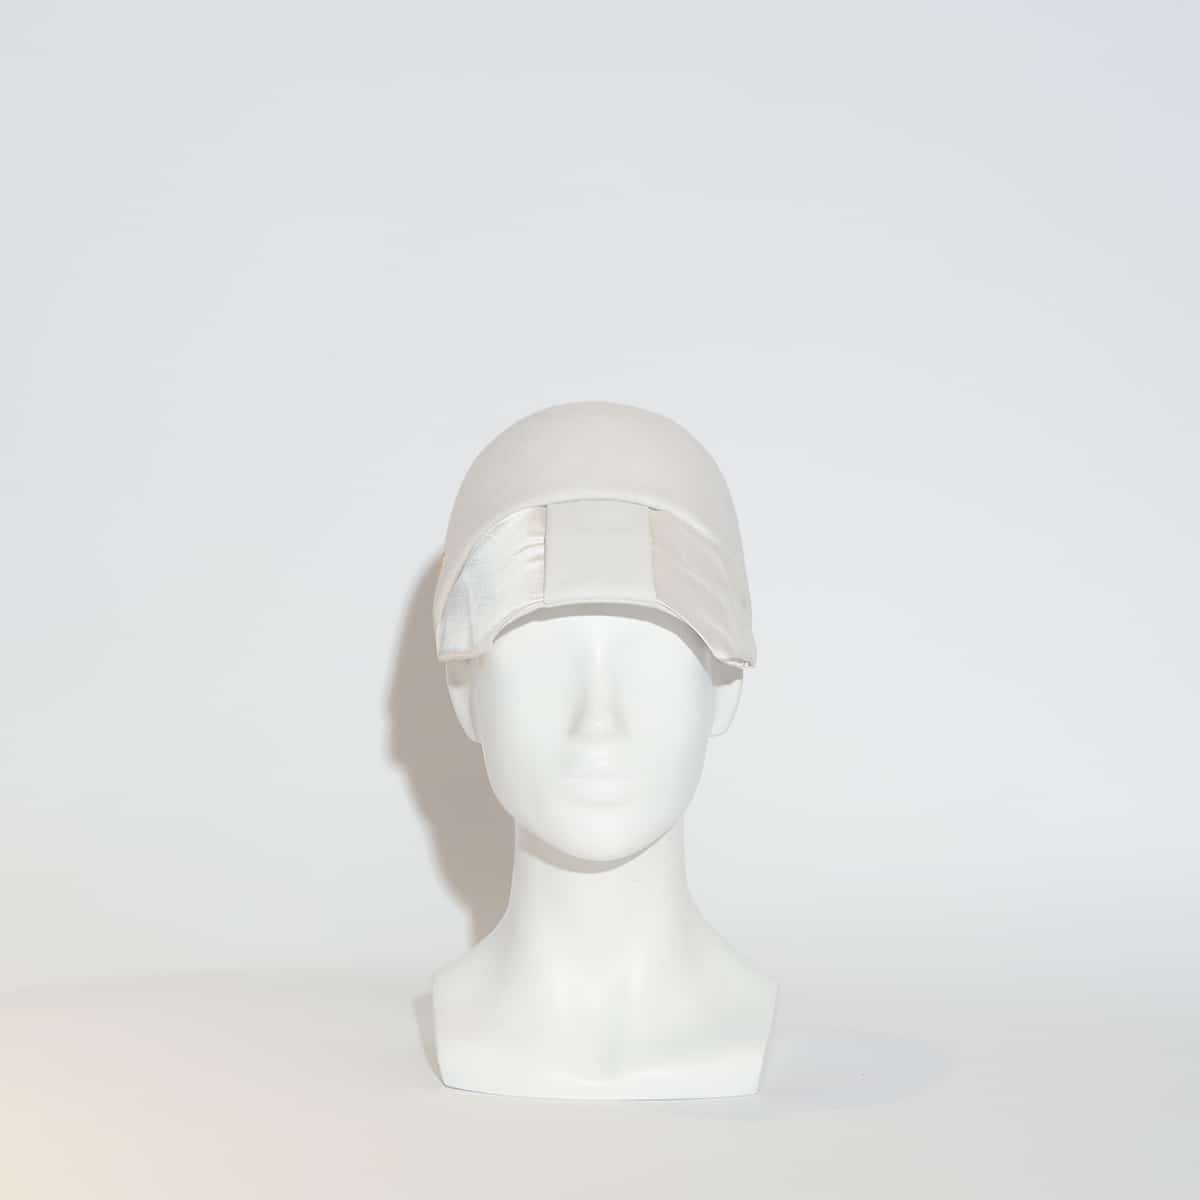 Découvrez Barberella, notre sublime casquette en feutre de lapin blanche, imaginée et conçue par la modiste italienne Veronica Marucci au sein de son atelier parisien. D